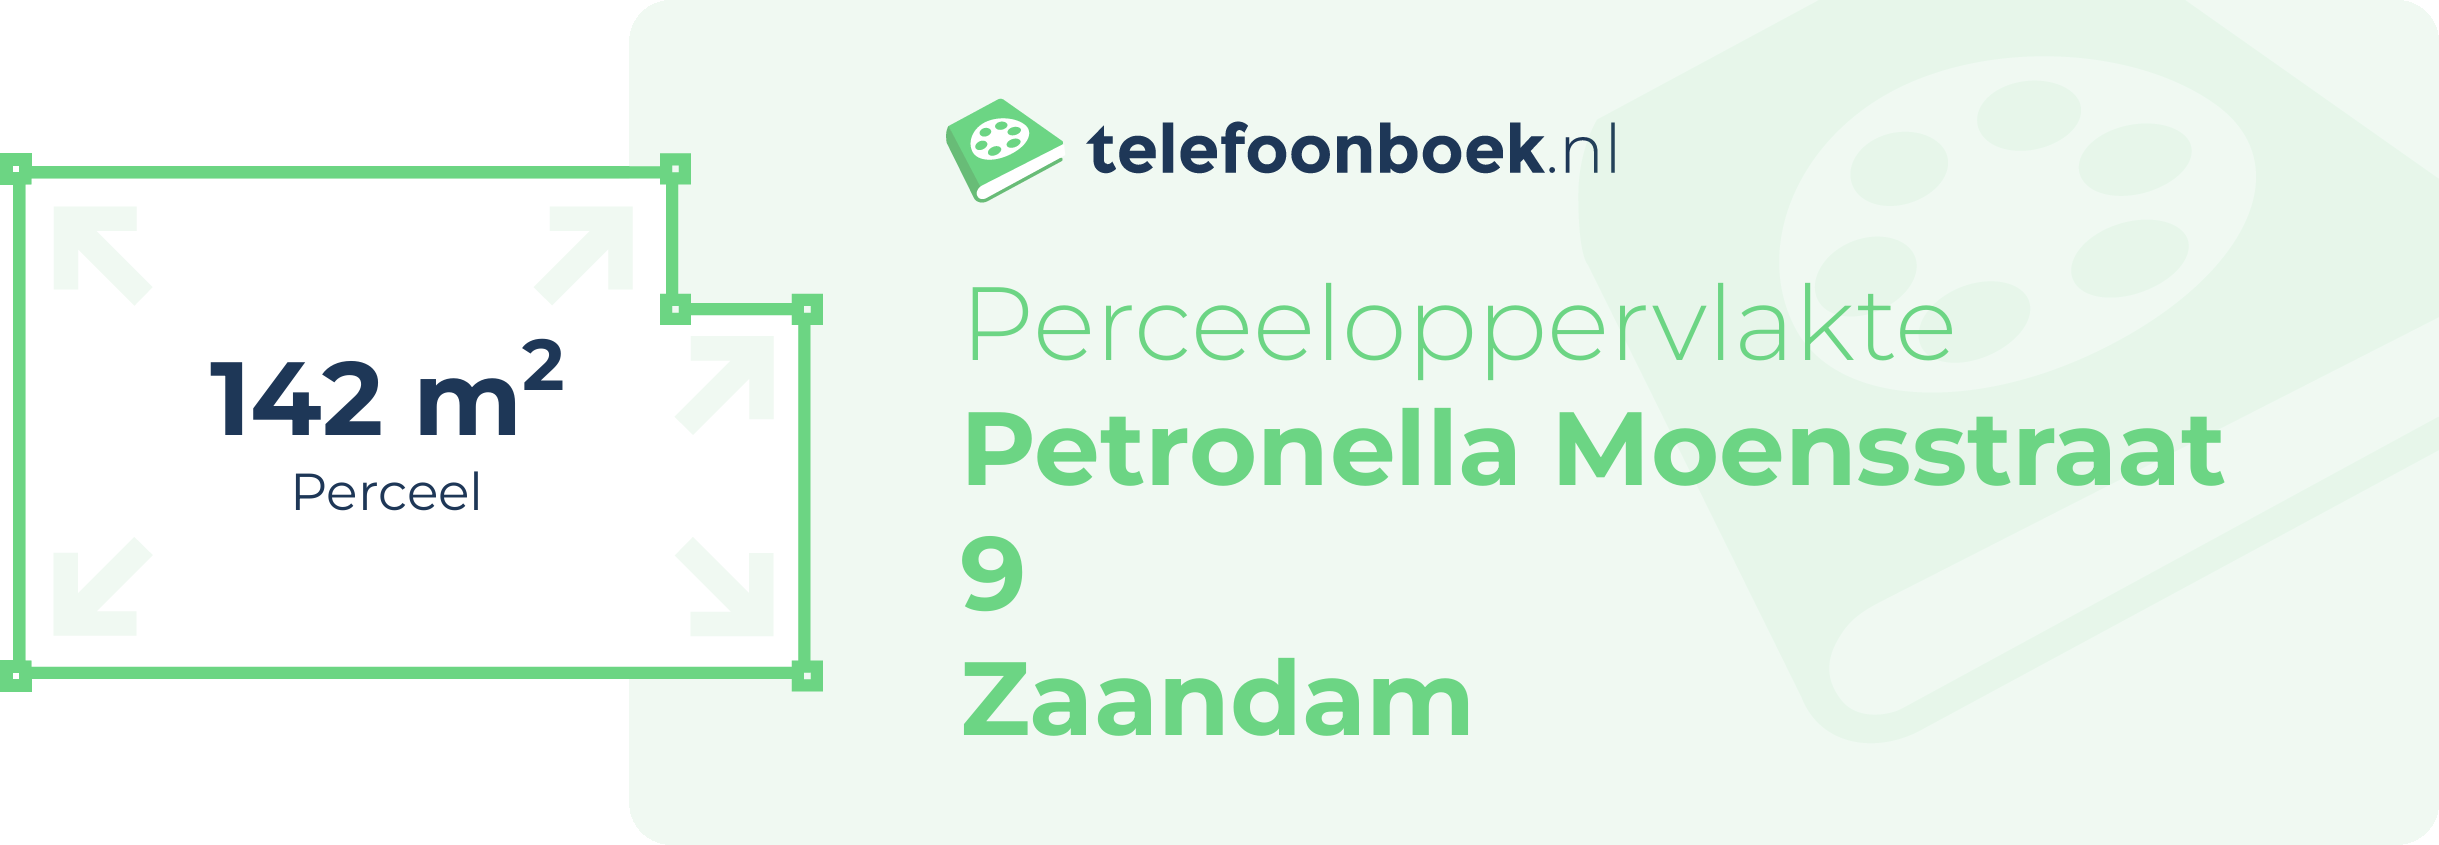 Perceeloppervlakte Petronella Moensstraat 9 Zaandam